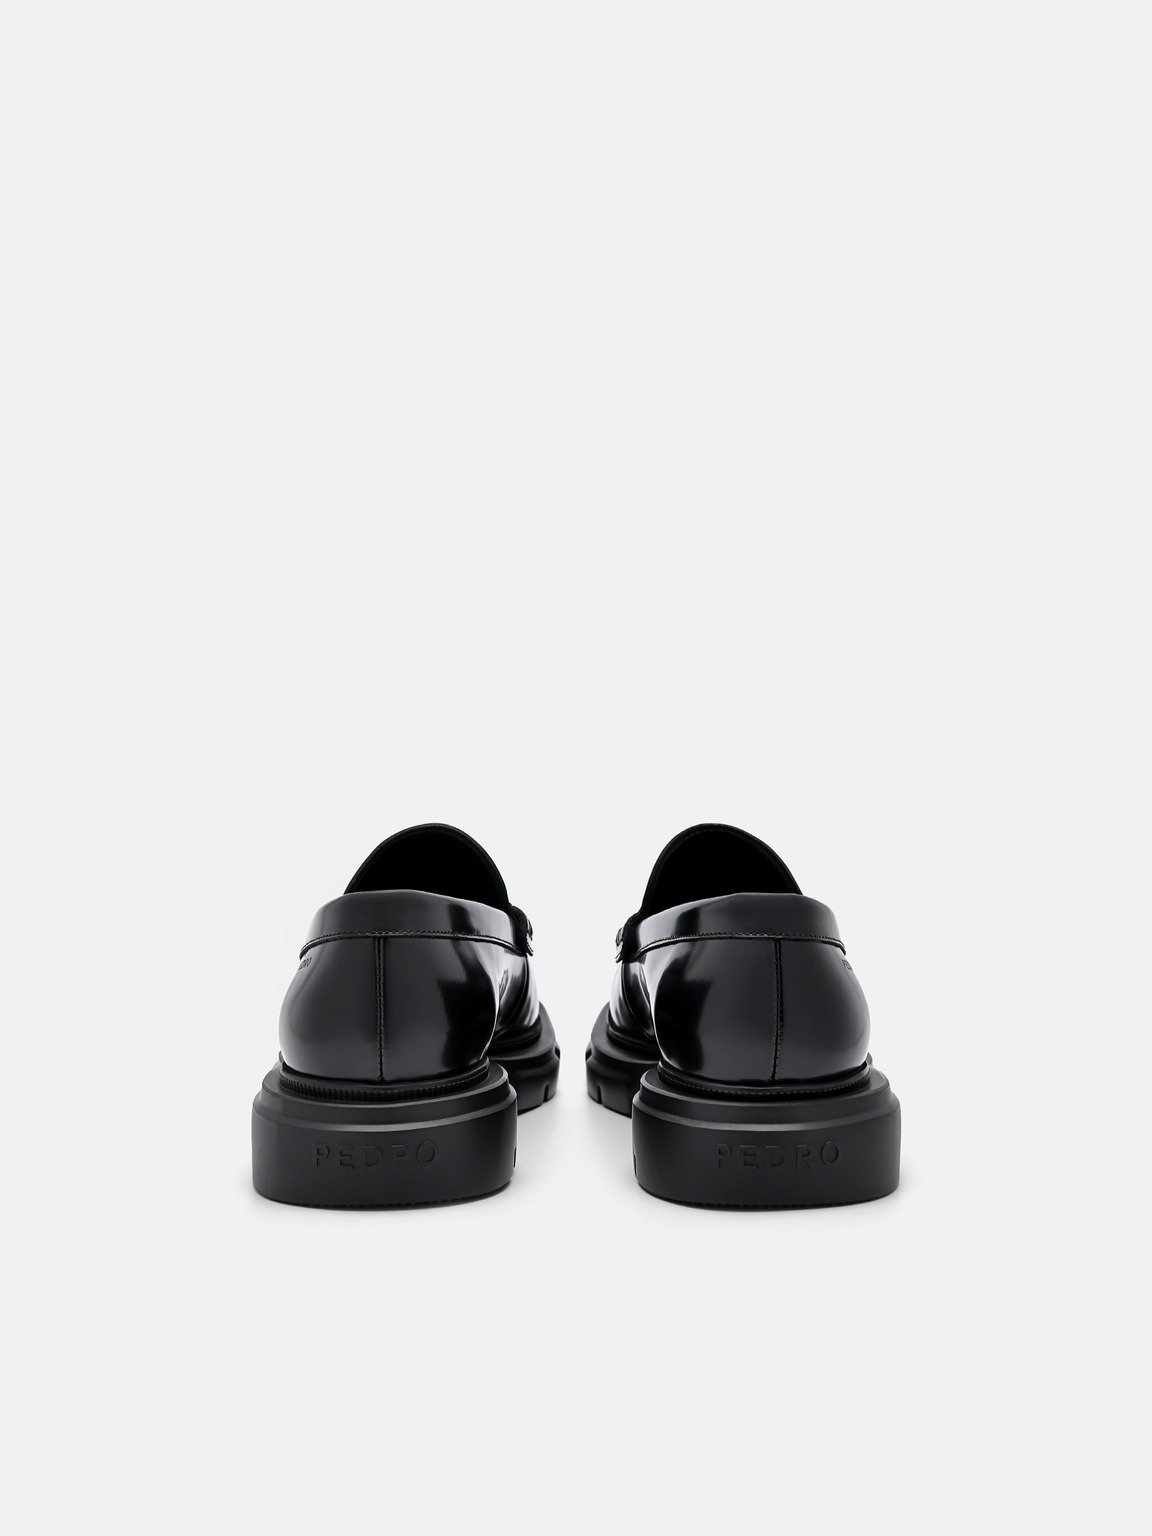 Women's Ellis Leather Loafers, Black